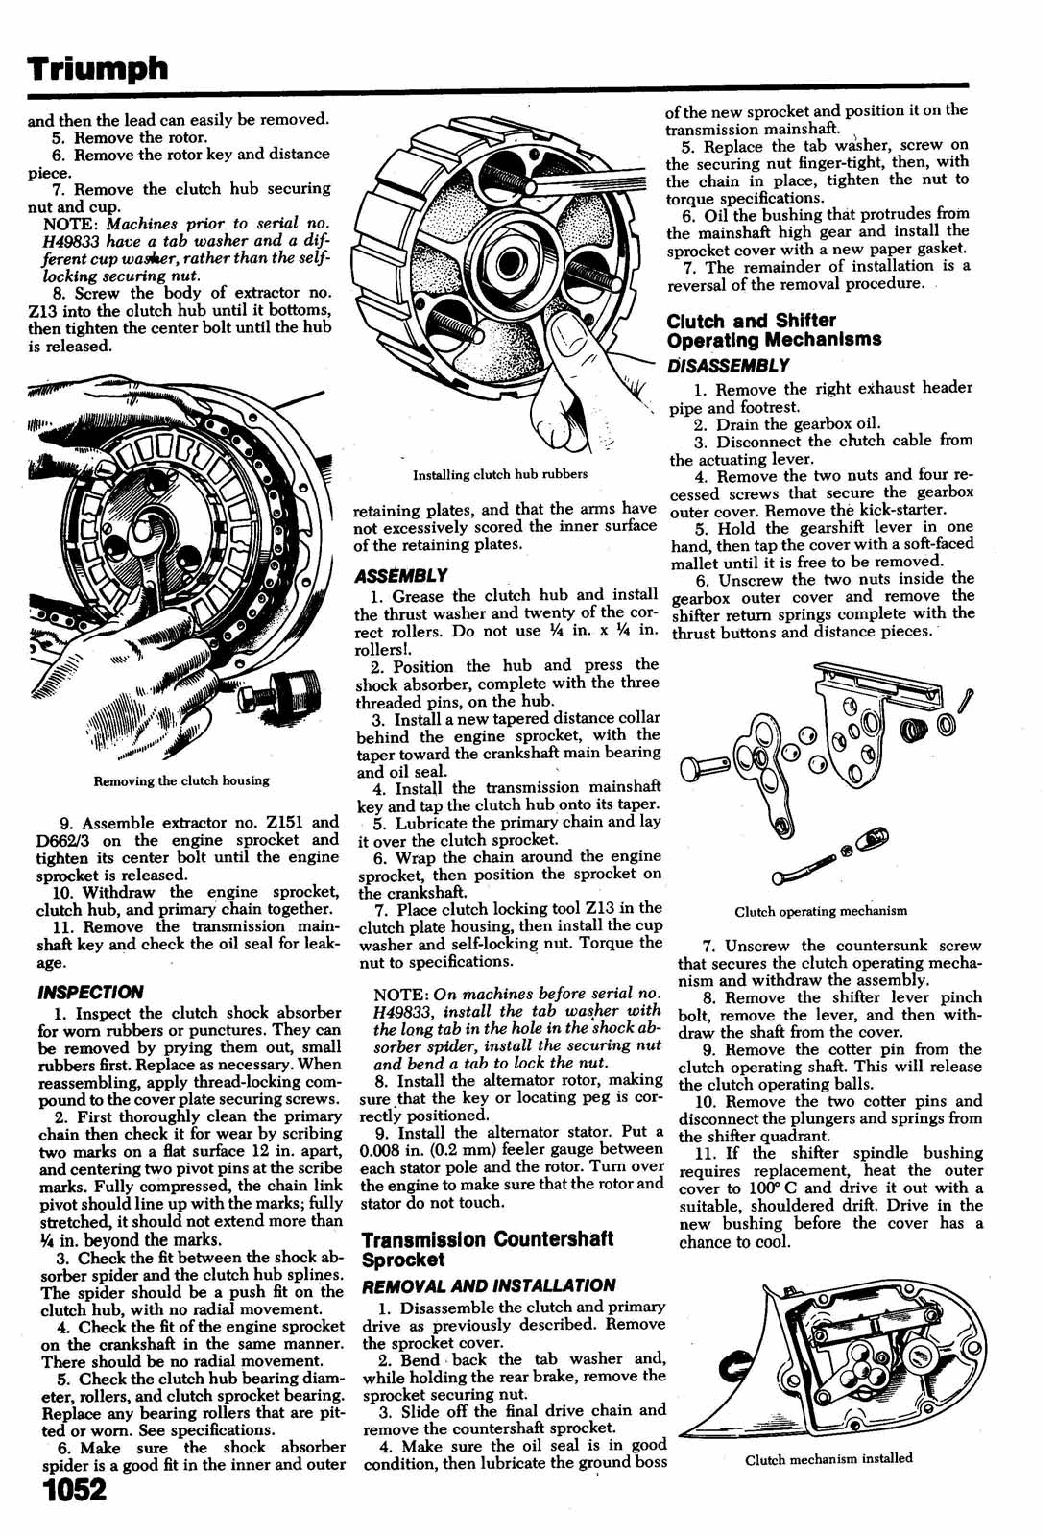 1956-1962 Triumph Tiger 110 T110 Service Manual